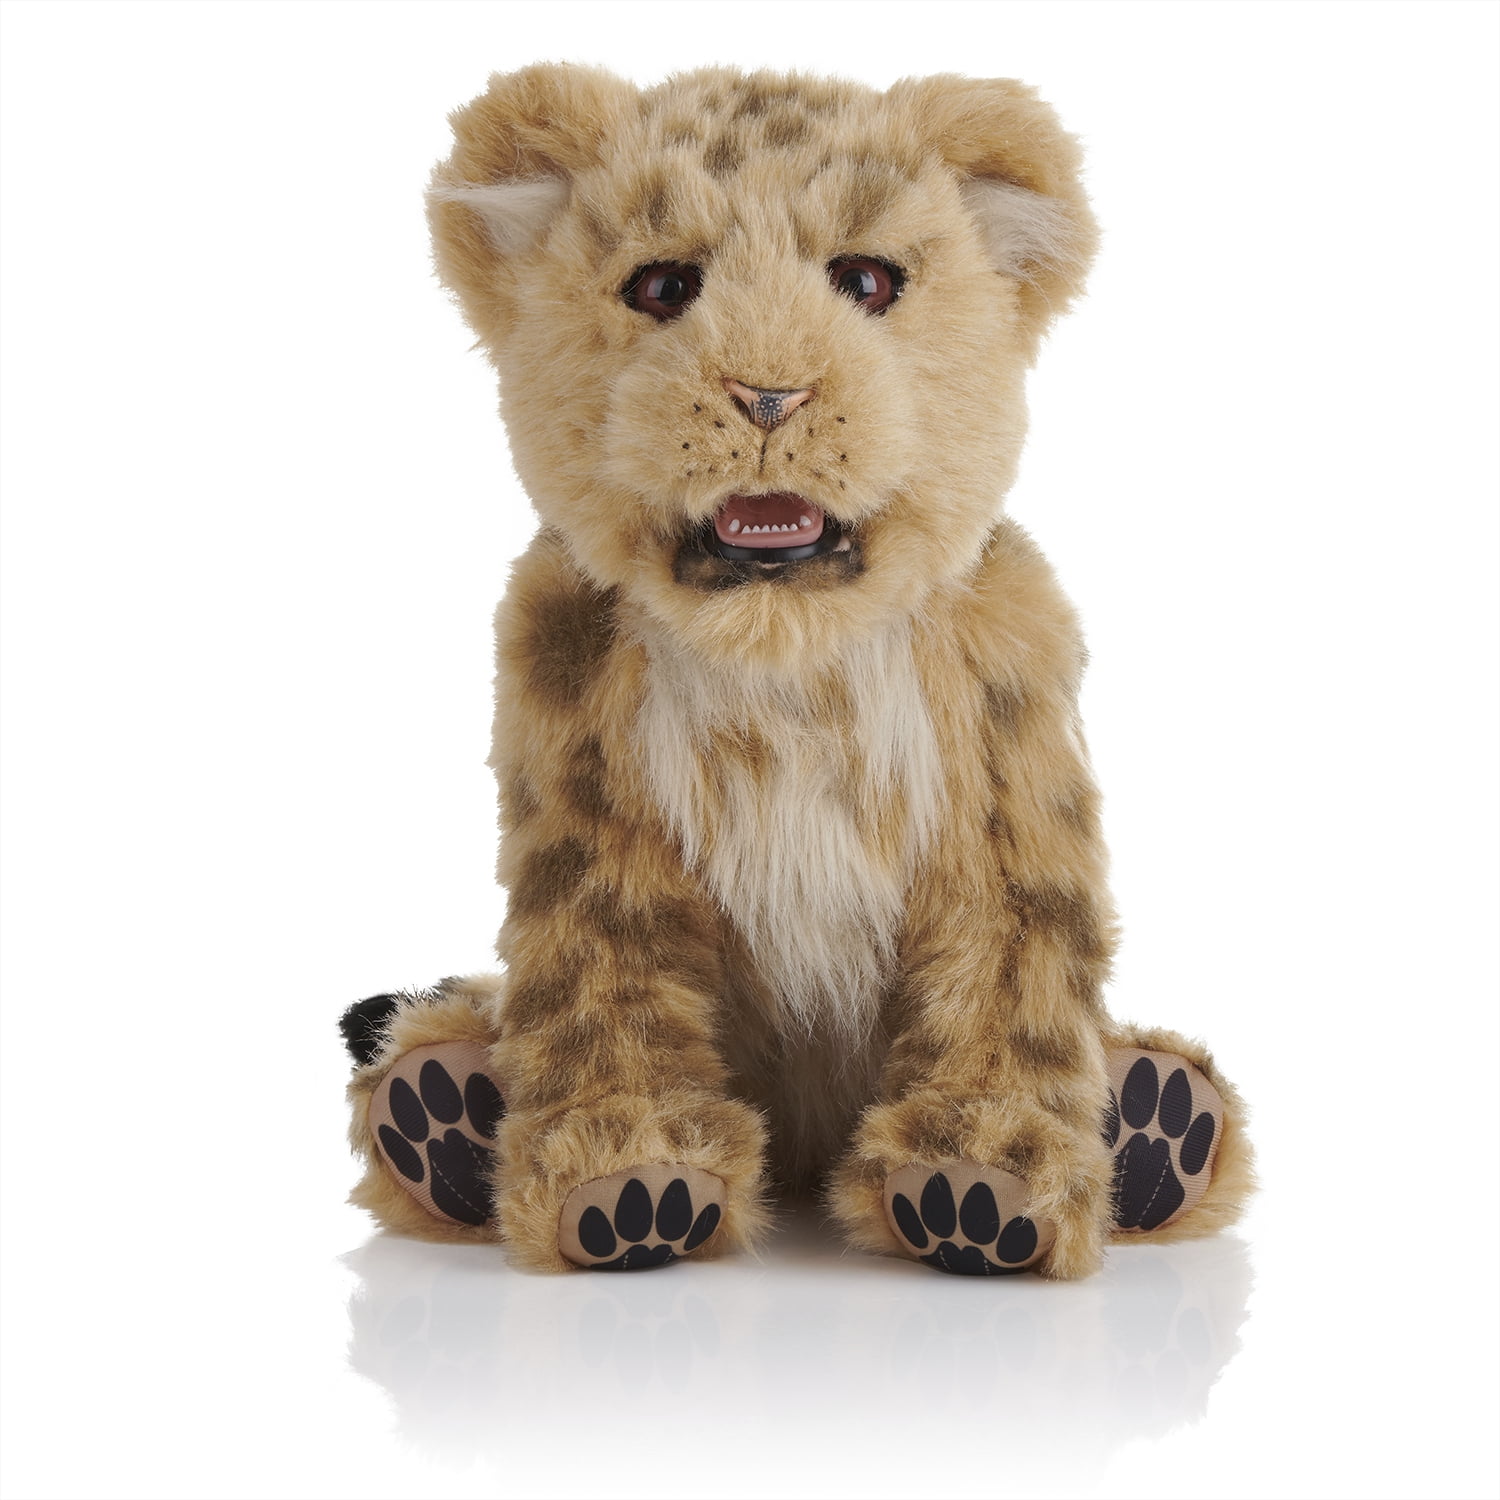 Интерактивный лев. Игрушка WOWWEE Alive. WOWWEE леопард. WOWWEE интерактивная игрушка Alive. Интерактивная мягкая игрушка WOWWEE Alive Minis Lion Cub.